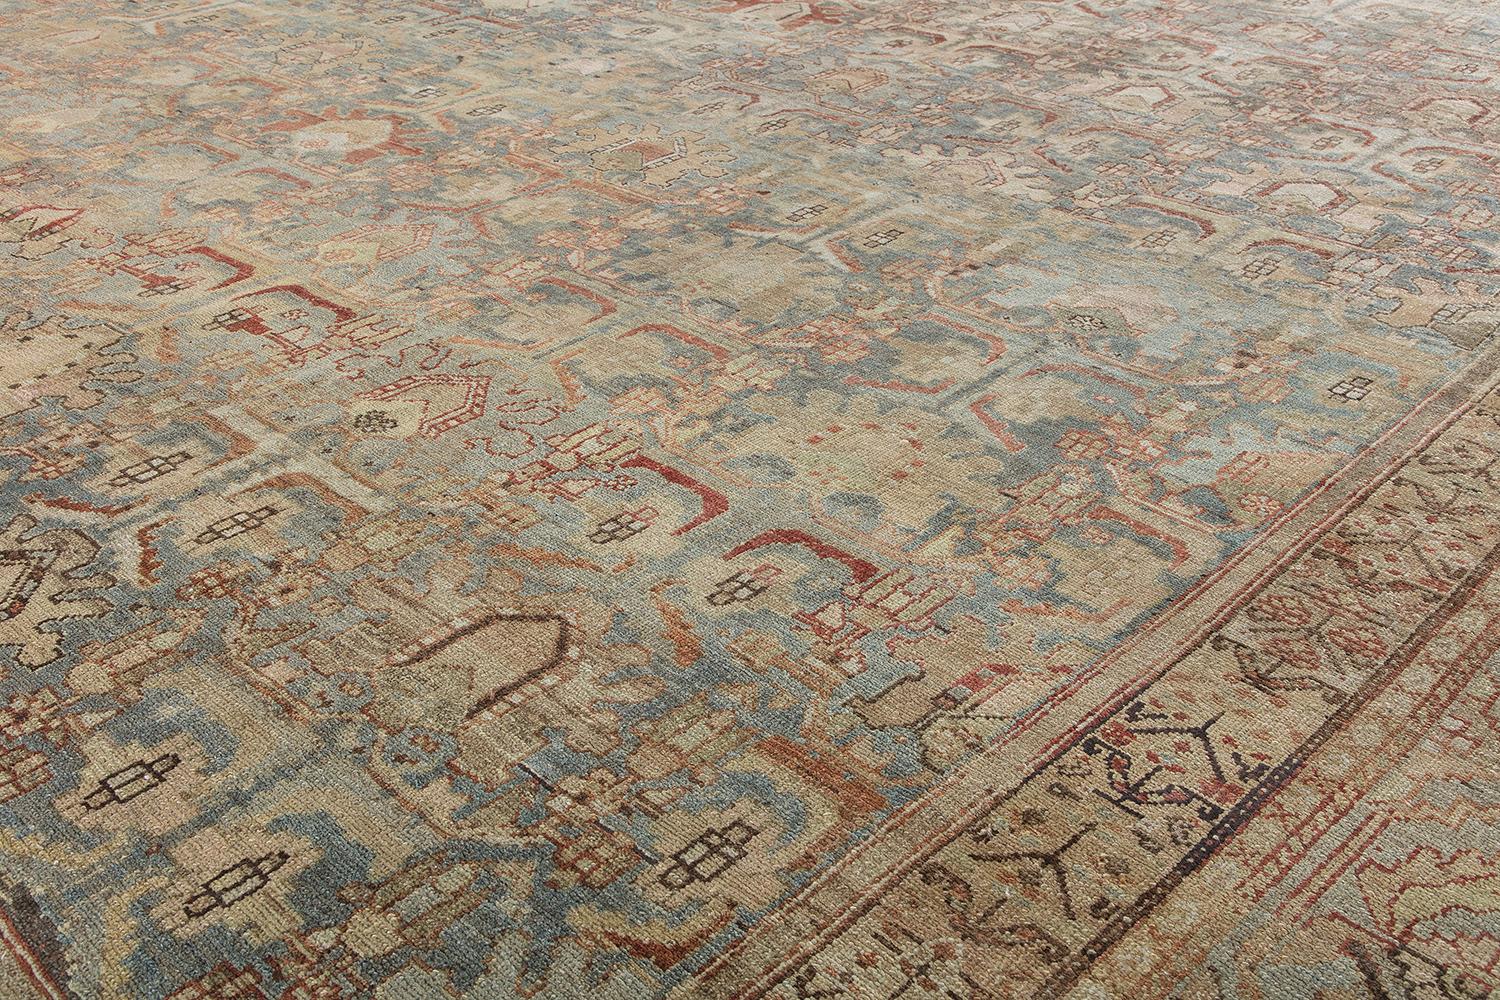 Dieser antike Malayer-Teppich wurde von N A S I R I durch ausgiebige Reisen, Leidenschaft und Forschung aufgespürt. Malayer-Teppiche sind nach einem bedeutenden Teppichweberdorf im zentralen Westiran benannt. Das Dorf war im 19. Jahrhundert für die